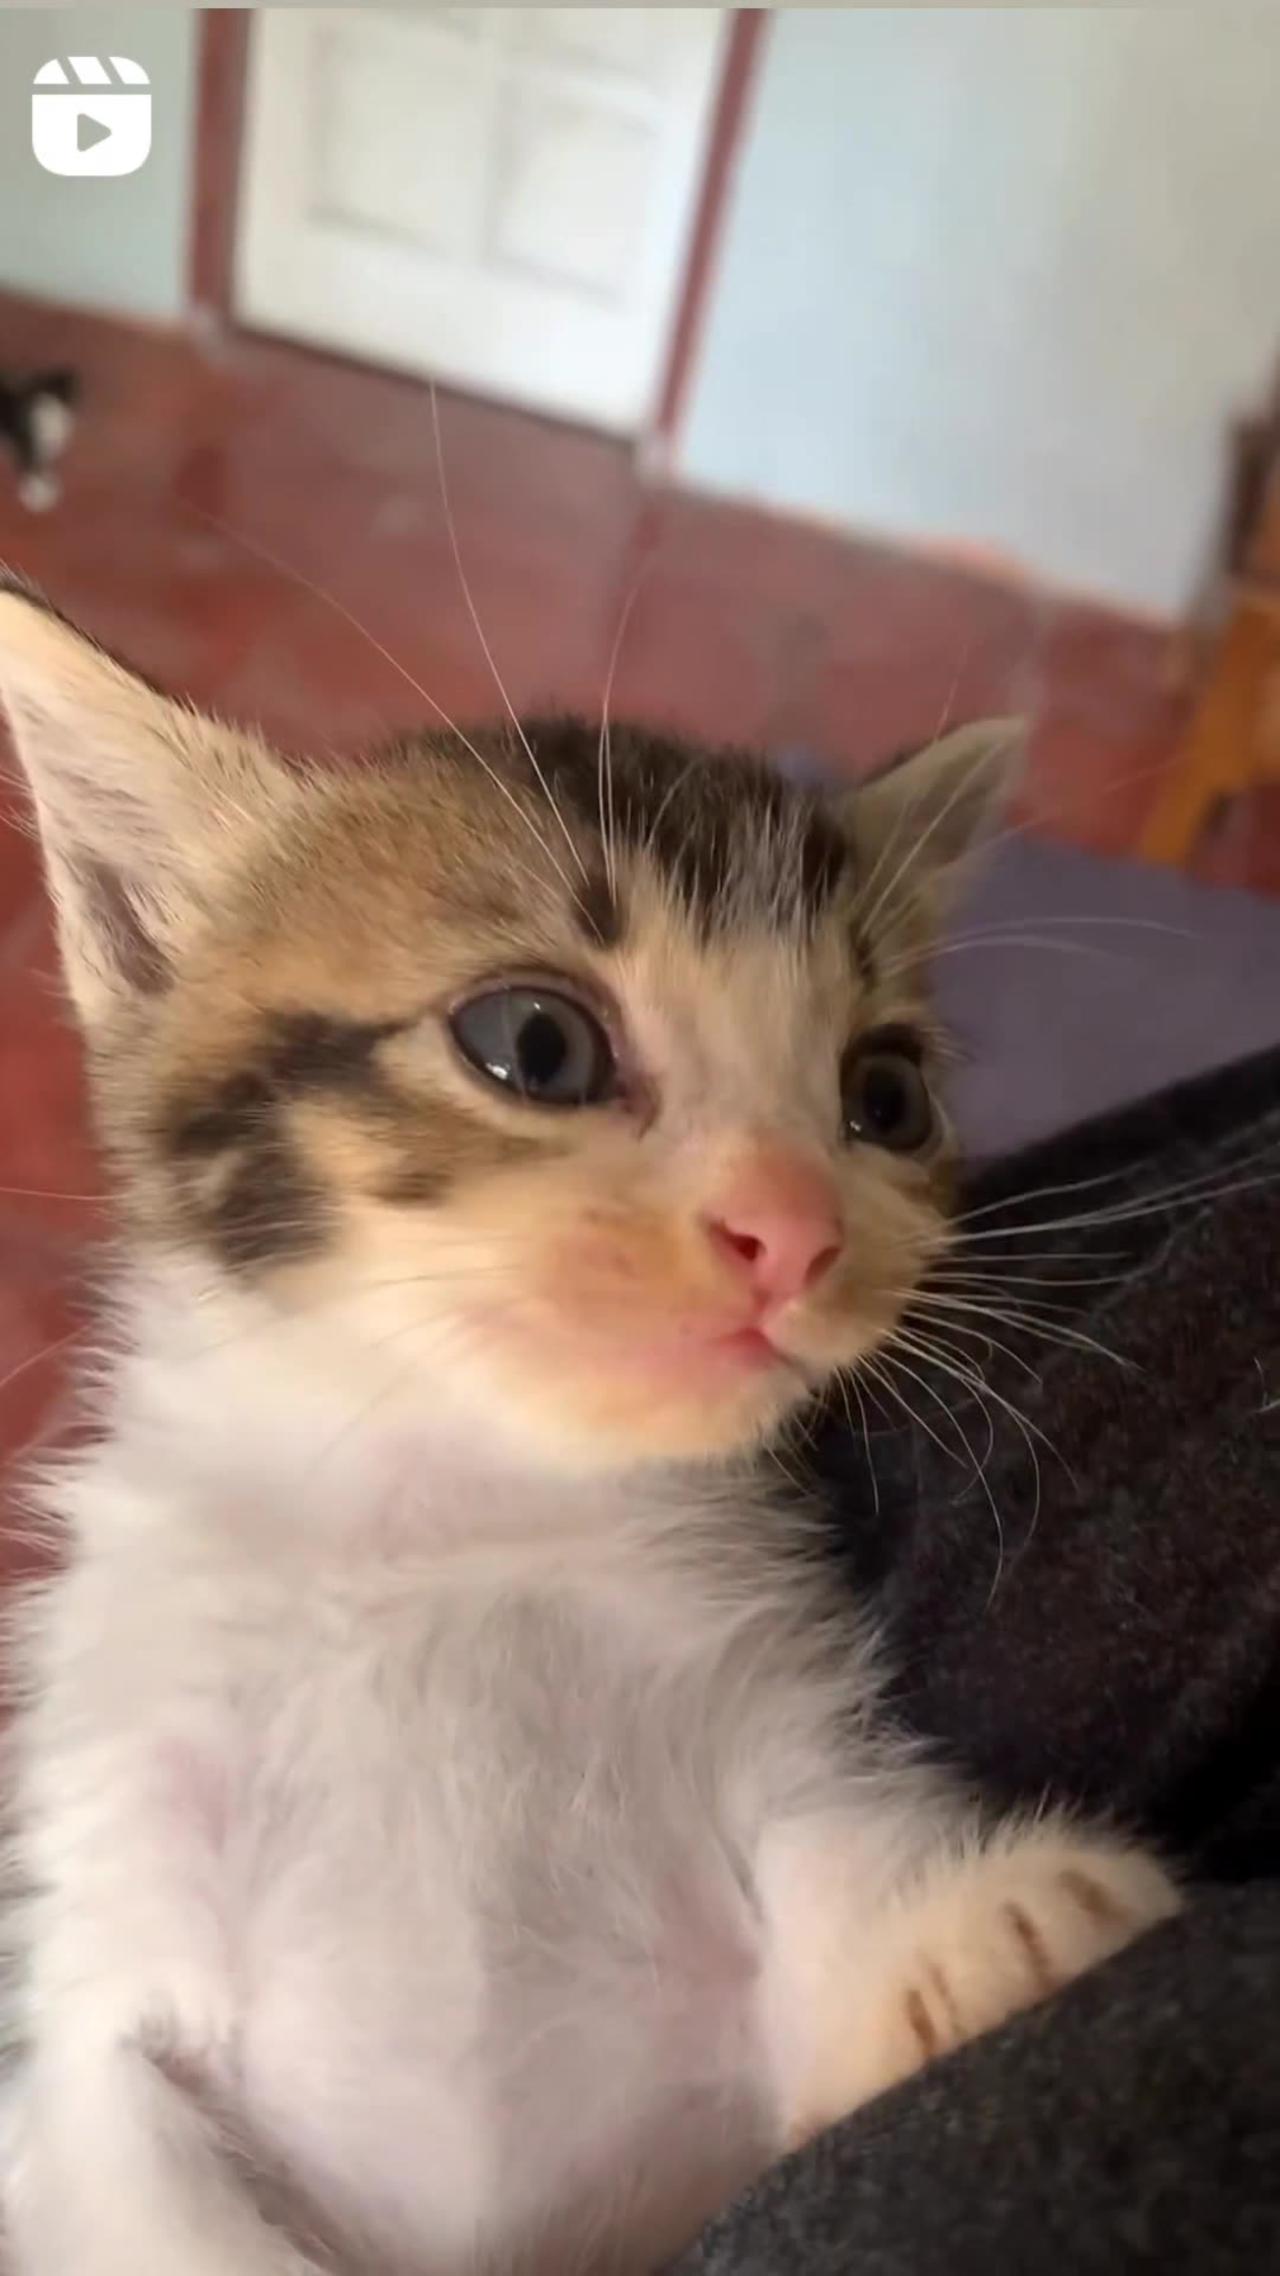 Cat cute viral video 😘😘